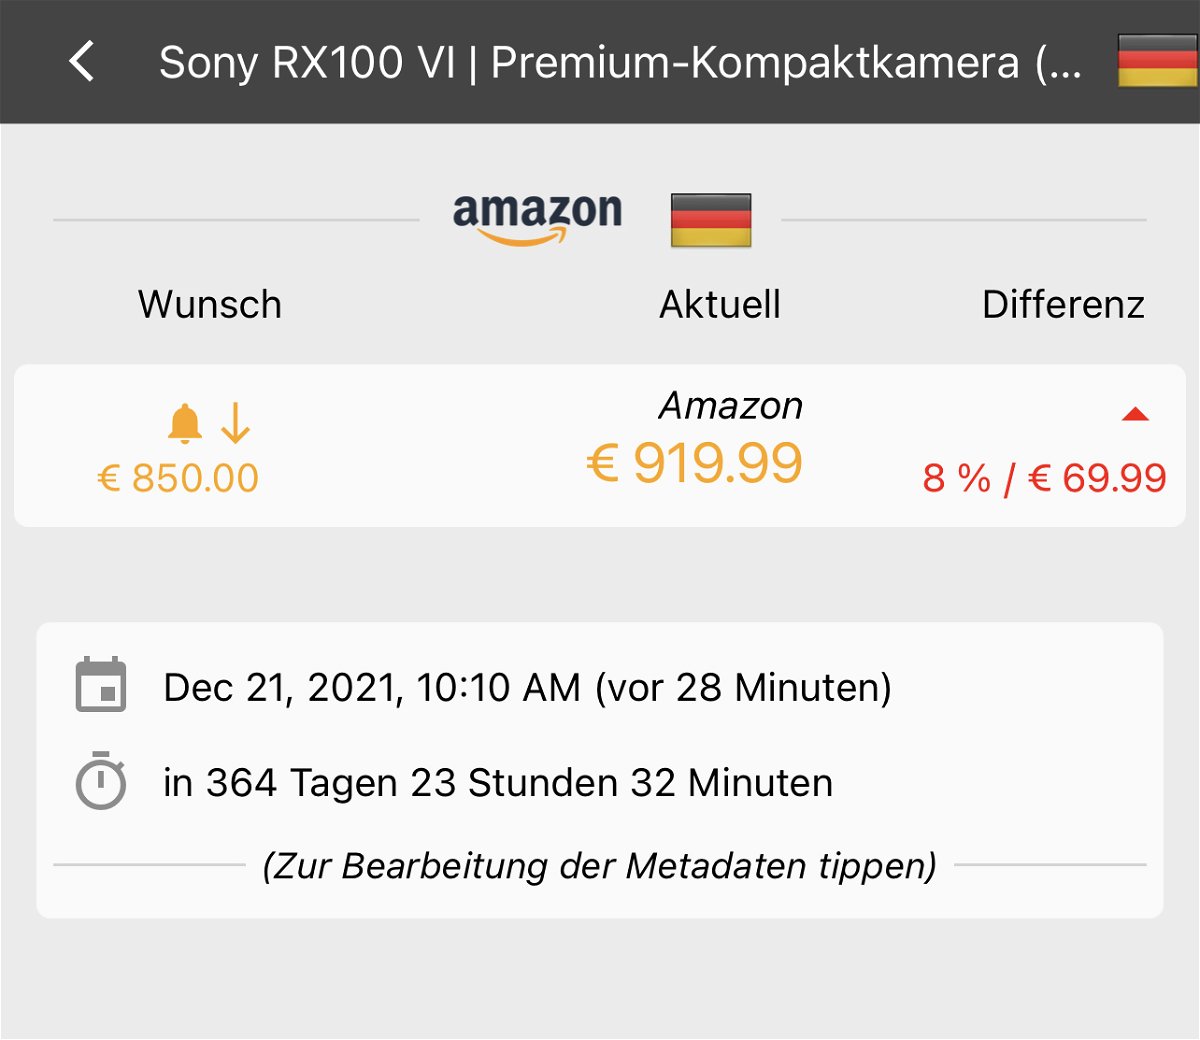 Preisalarme bei Amazon setzen: Keepa